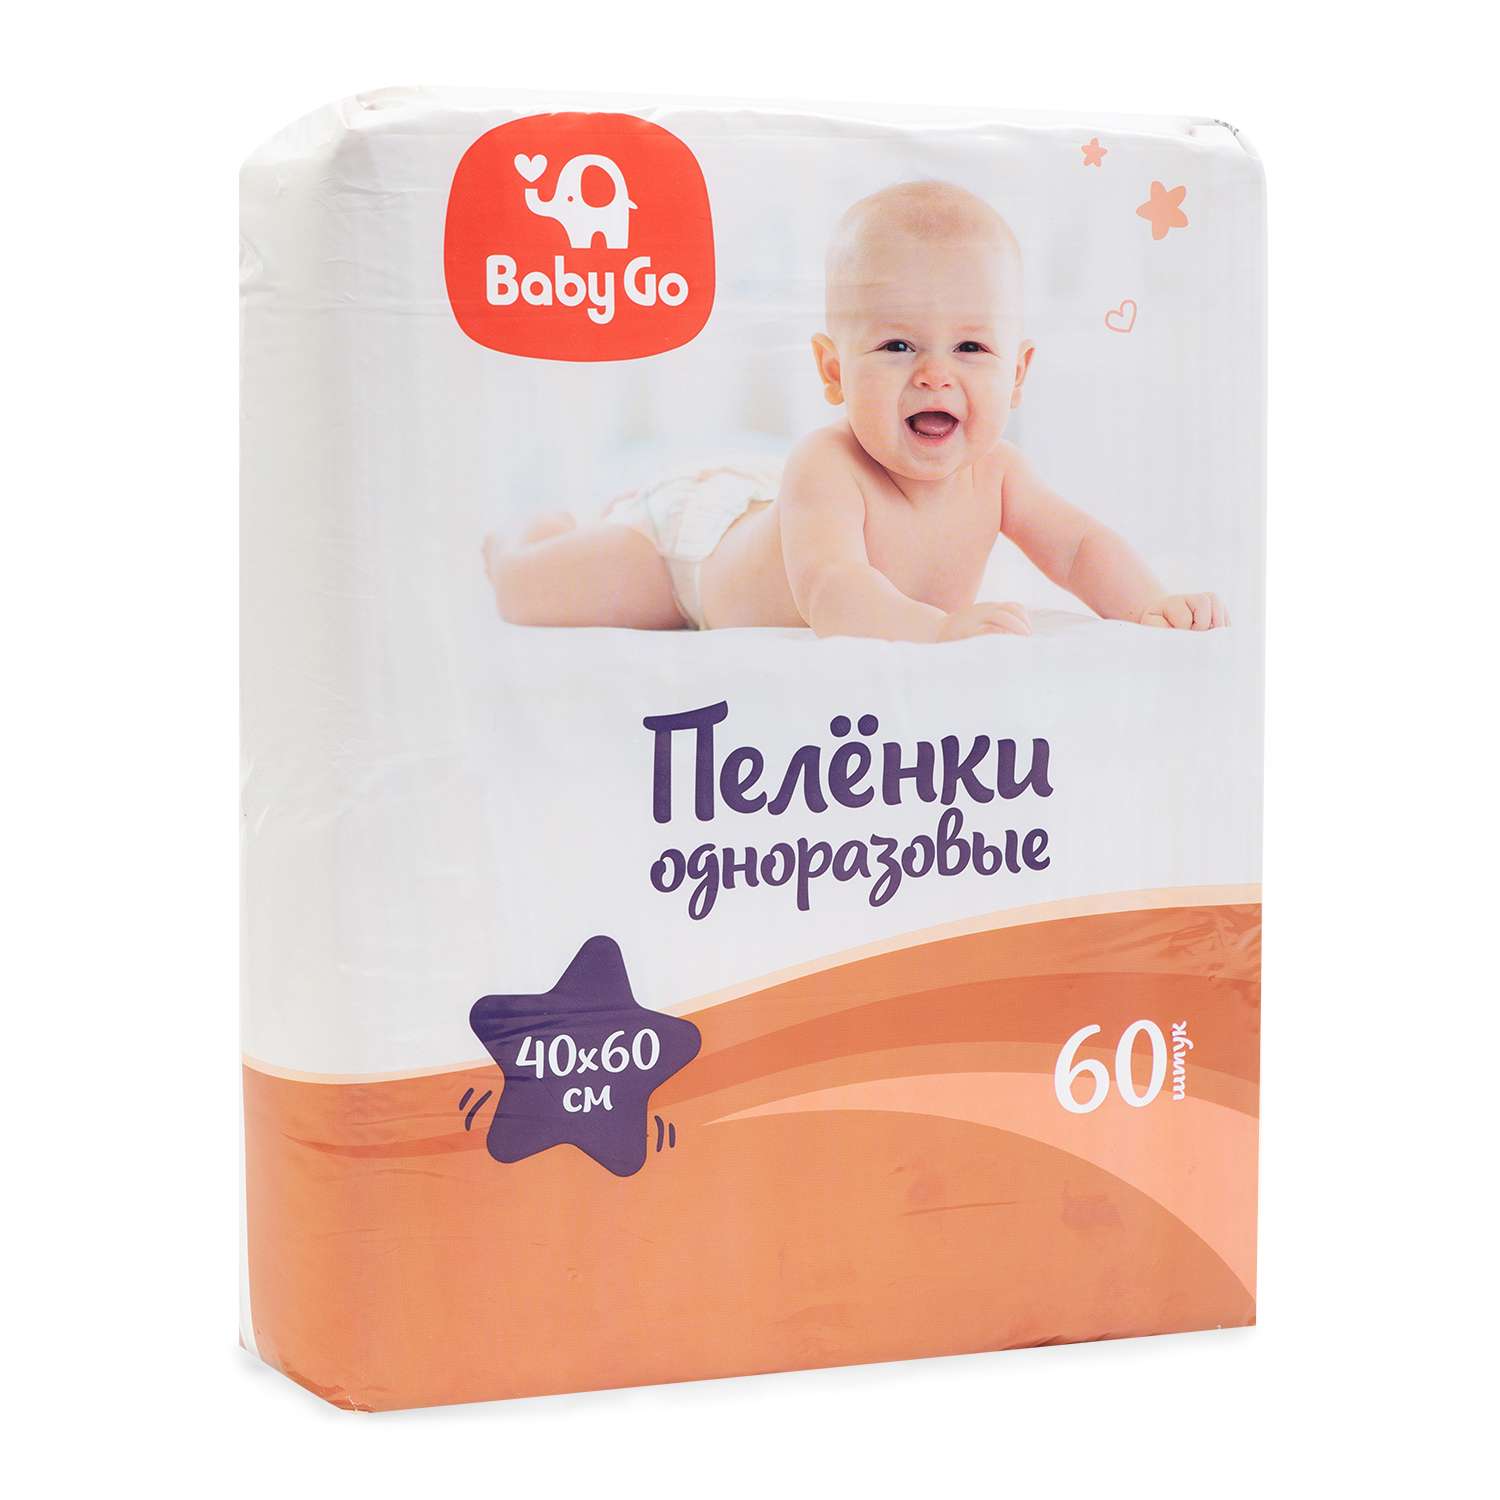 Пеленки BabyGo одноразовые 40*60 60шт - фото 2